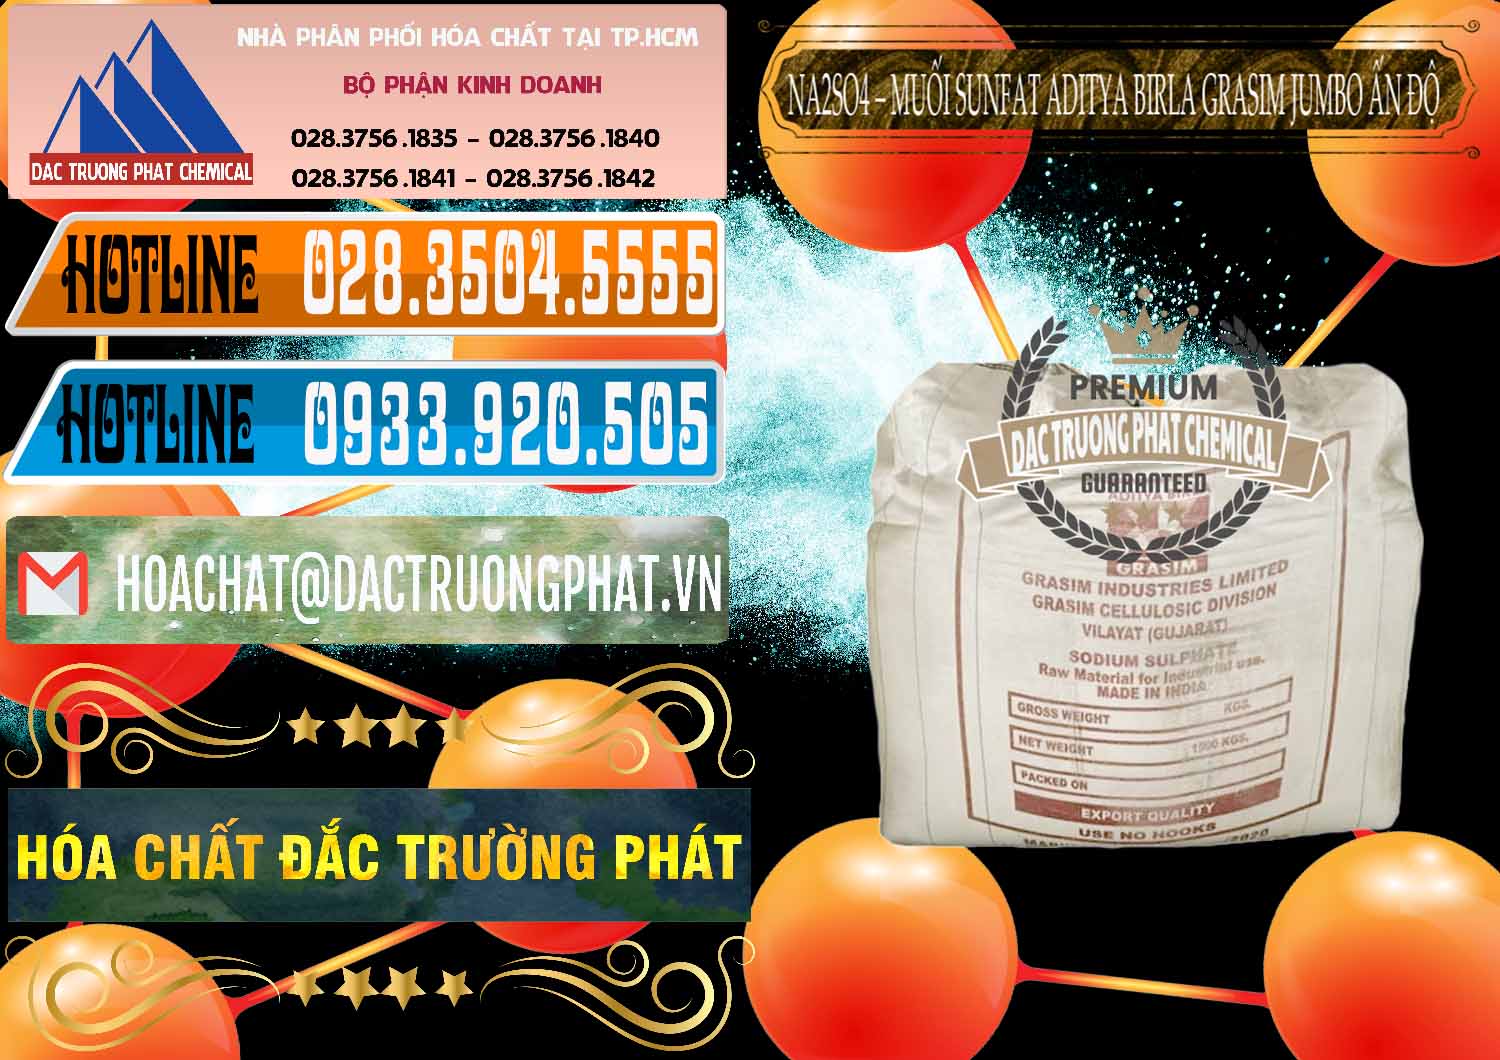 Nhà cung cấp và bán Sodium Sulphate - Muối Sunfat Na2SO4 Jumbo Bành Aditya Birla Grasim Ấn Độ India - 0357 - Đơn vị bán ( cung cấp ) hóa chất tại TP.HCM - stmp.net